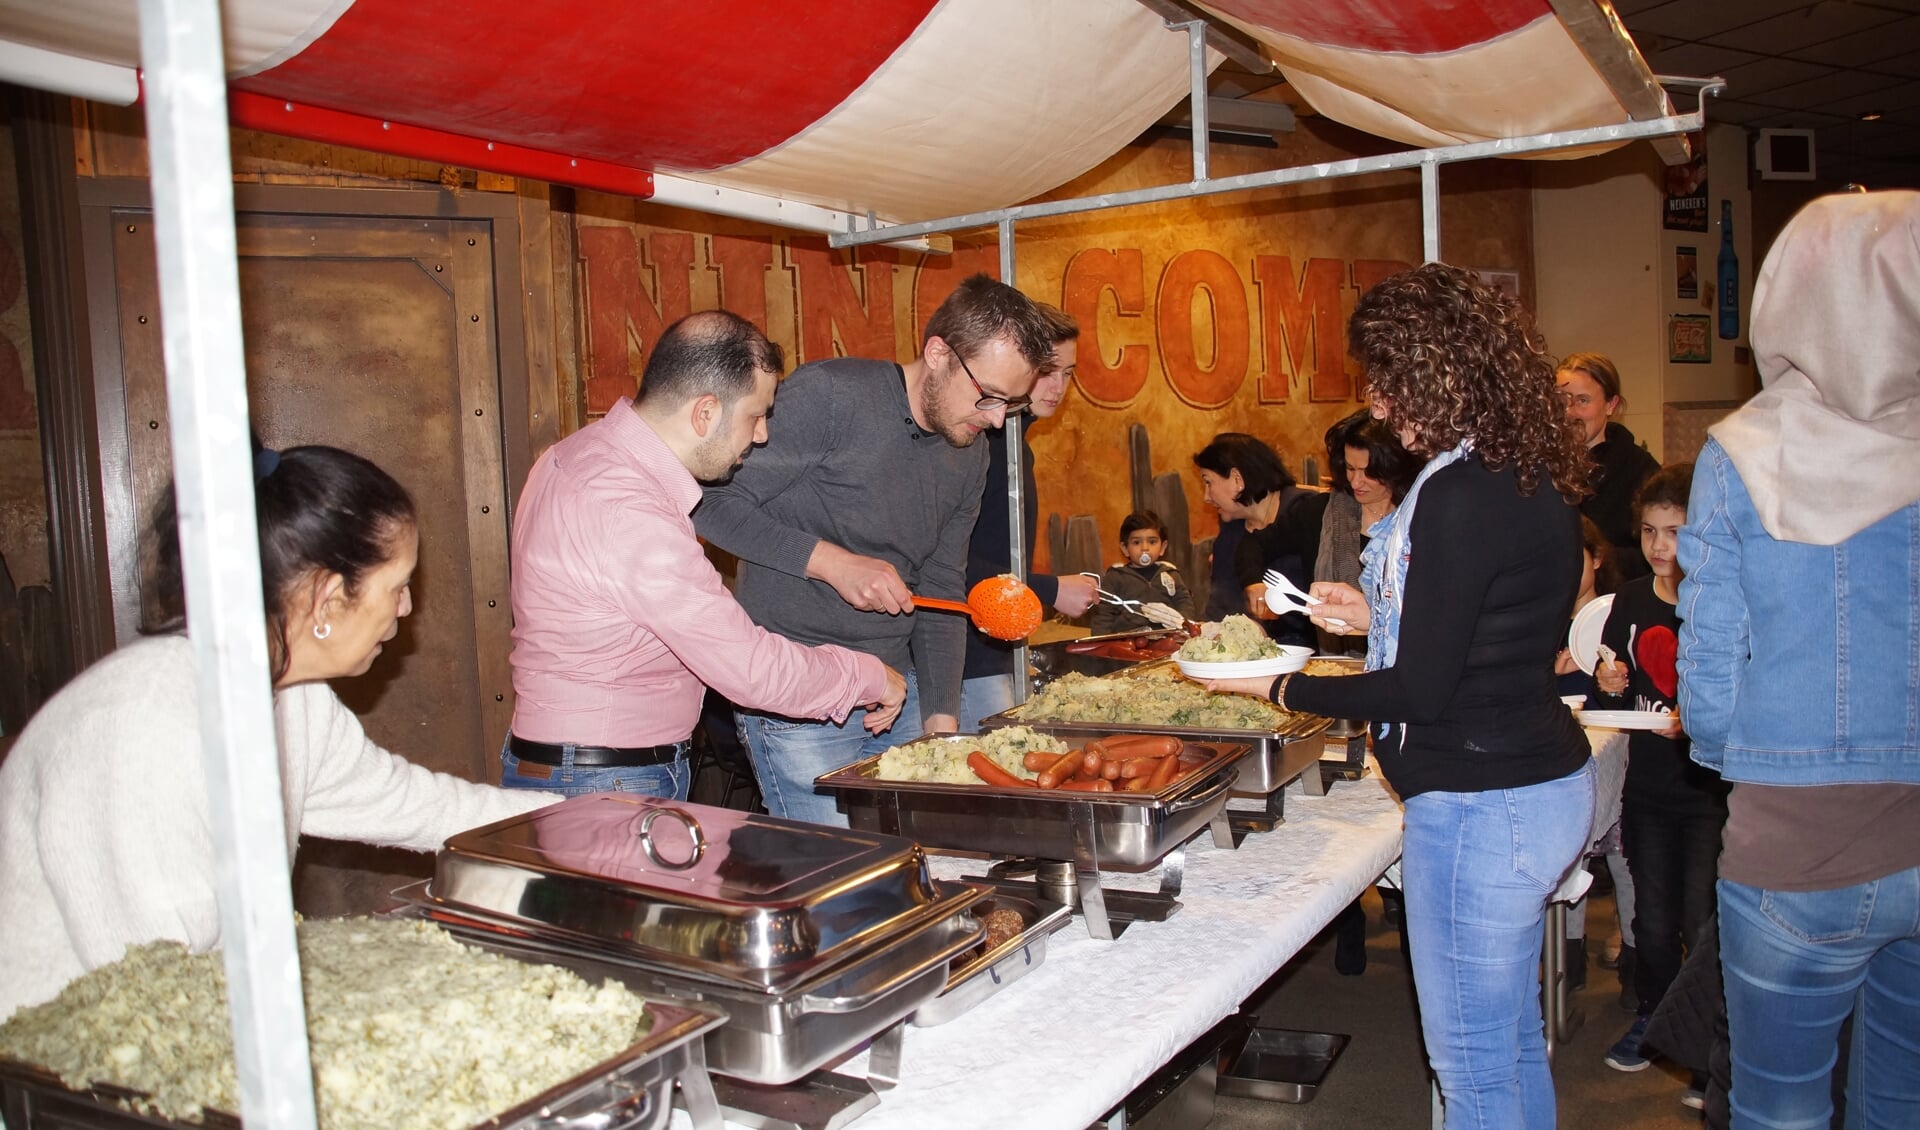 Het eten werd verzorgd door Hussam Karkas (in roze overhemd) met zijn vrouw, die drie jaar geleden vanuit Syrië naar Nederland kwamen. Hij gaat trouwens aan de slag als kok in het restaurant van WSW Ouddorp. 